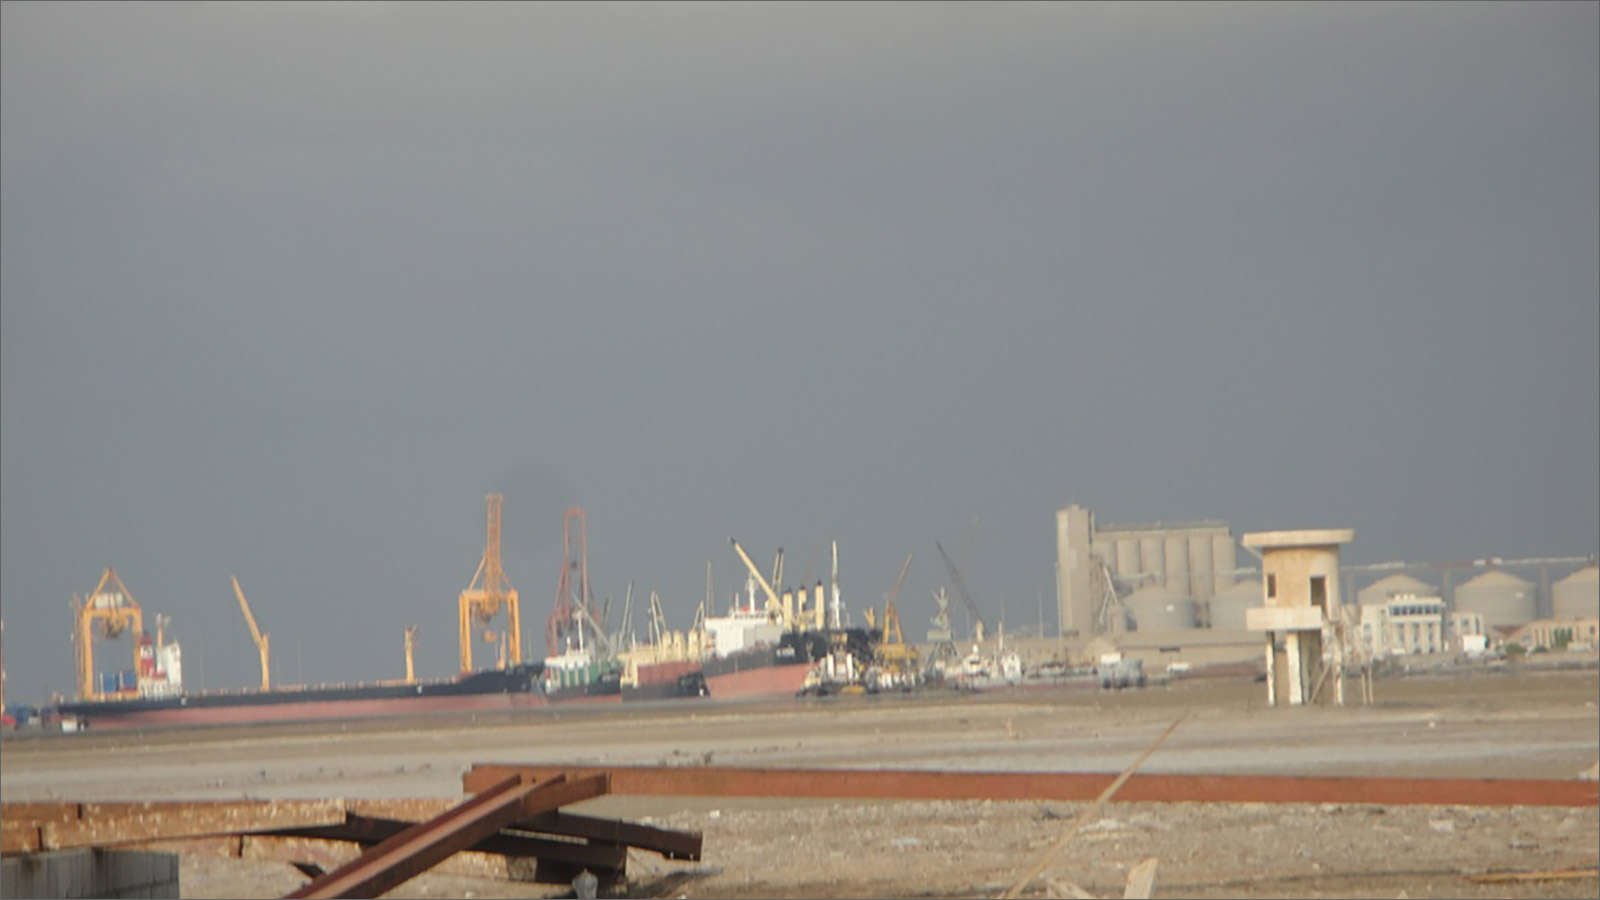 يصل حوالي 70% من بضائع البلاد عن طريق ميناء الحديدة. تتنبأ وكالات الإغاثة بمجاعة إن ظل الميناء خارج الخدمة لأكثر من أيام